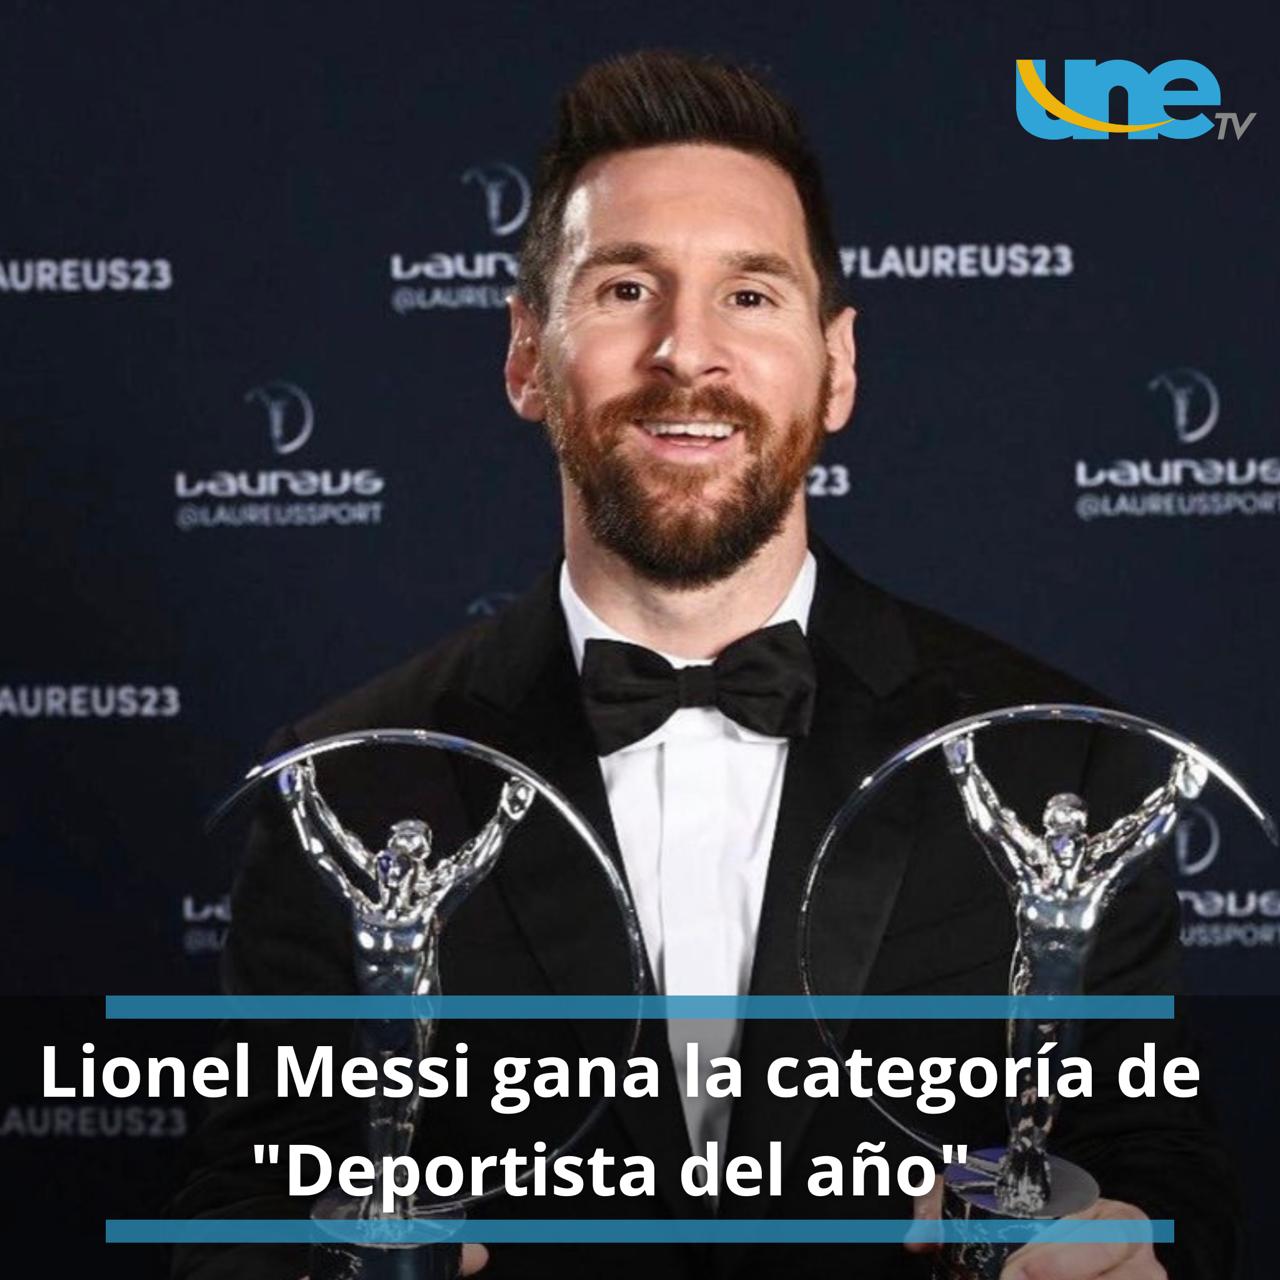 Lionel Messi, el Deportista del Año en los Premios Laureus World Sports Awards 2023